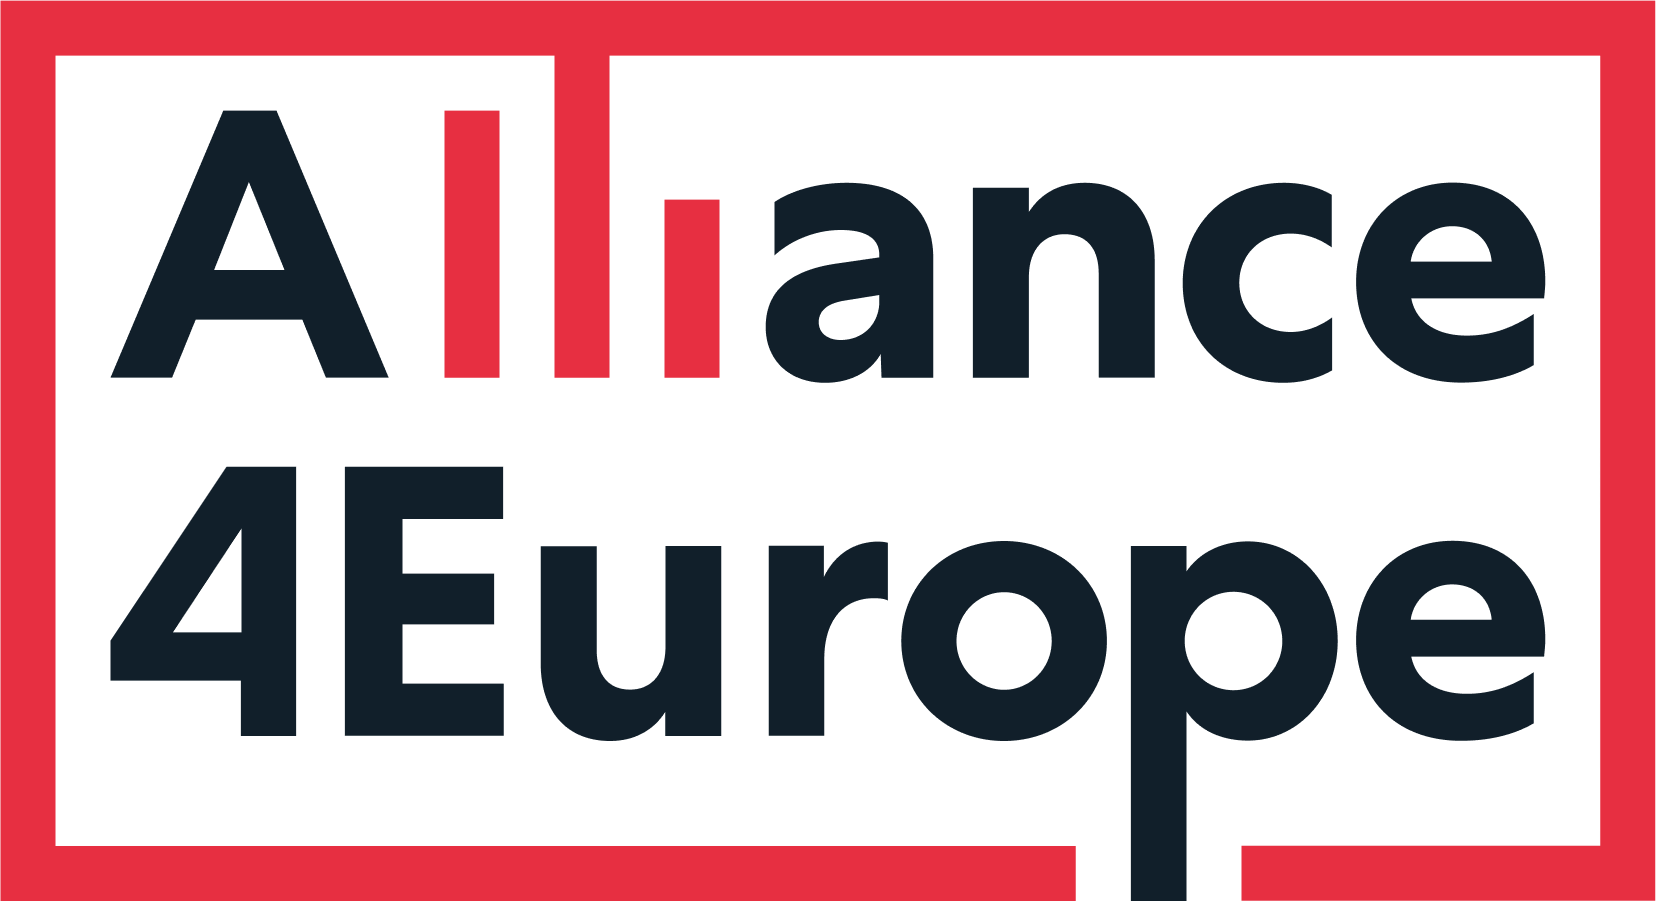 Alliance 4 Europe